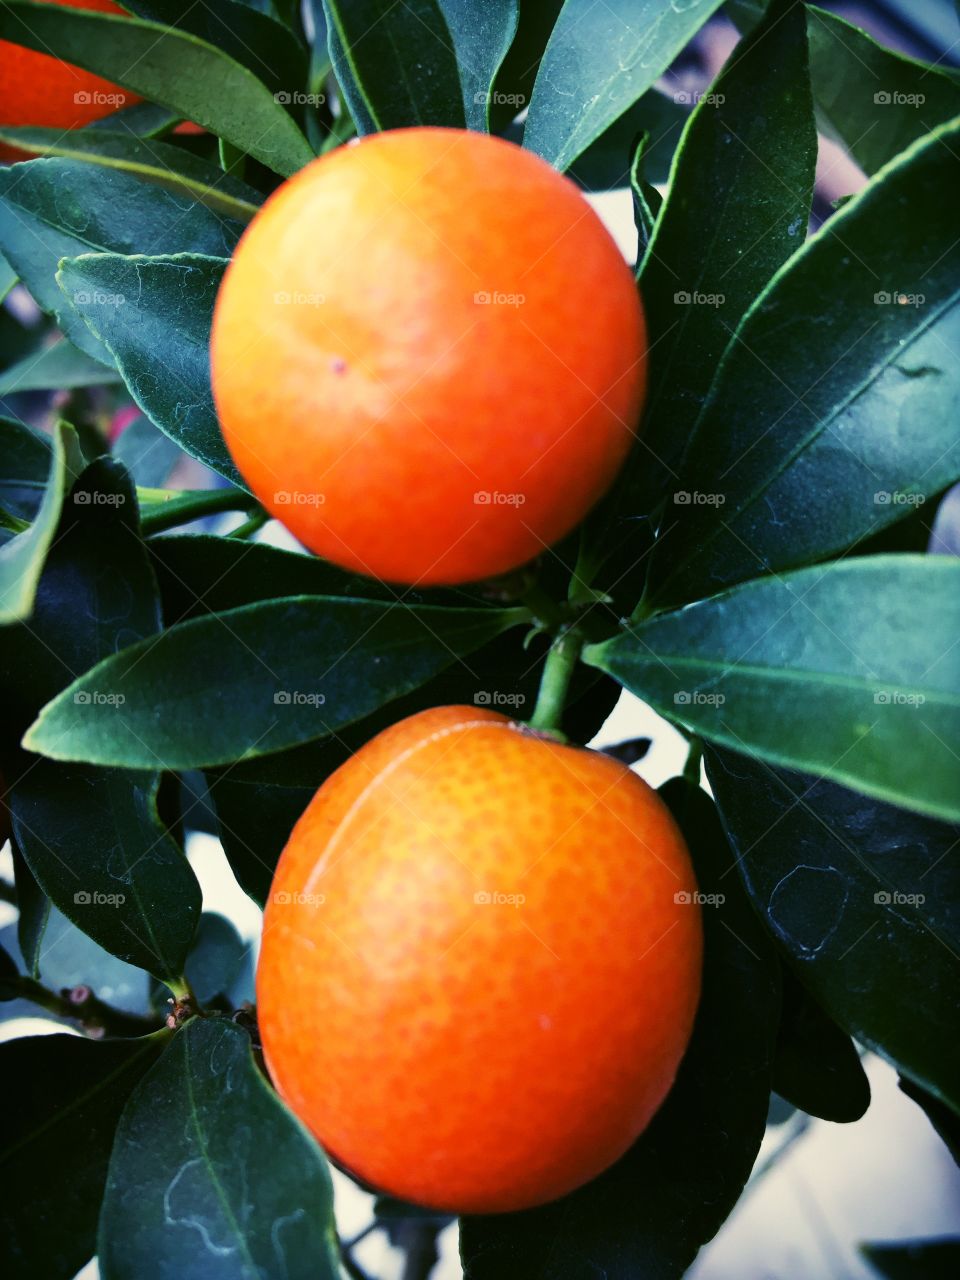 Small oranges 